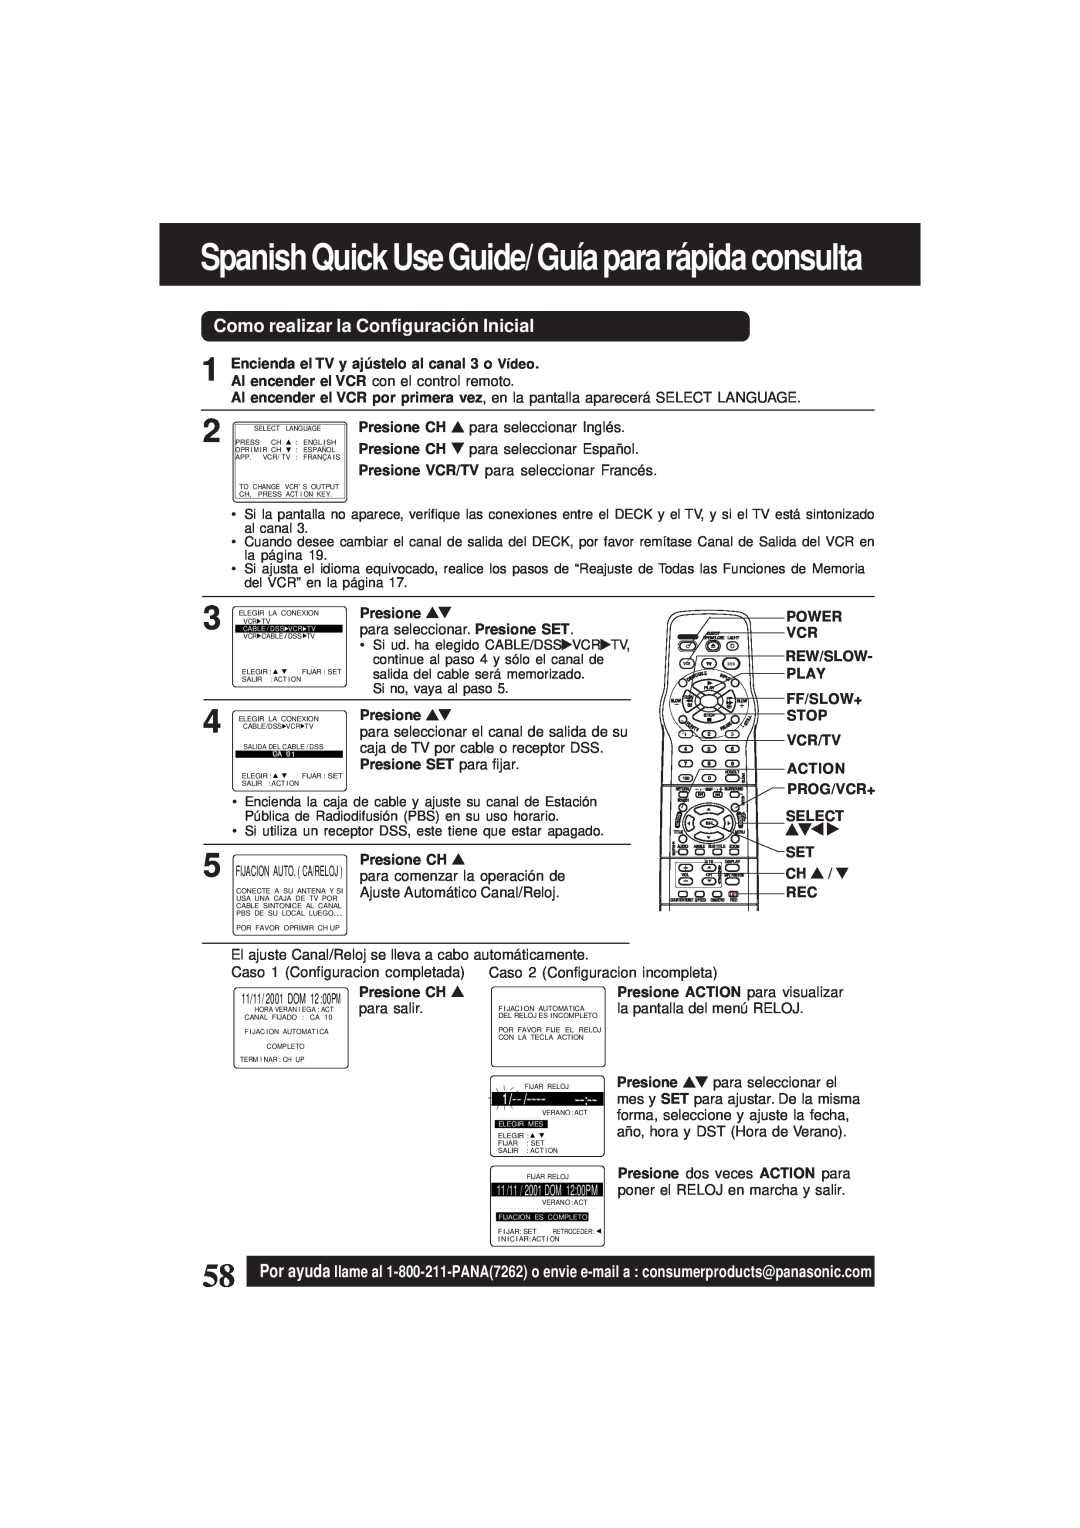 Panasonic PV-D4761 Spanish Quick Use Guide/ Guía para rápida consulta, Como realizar la Configuració n Inicial, Presione 